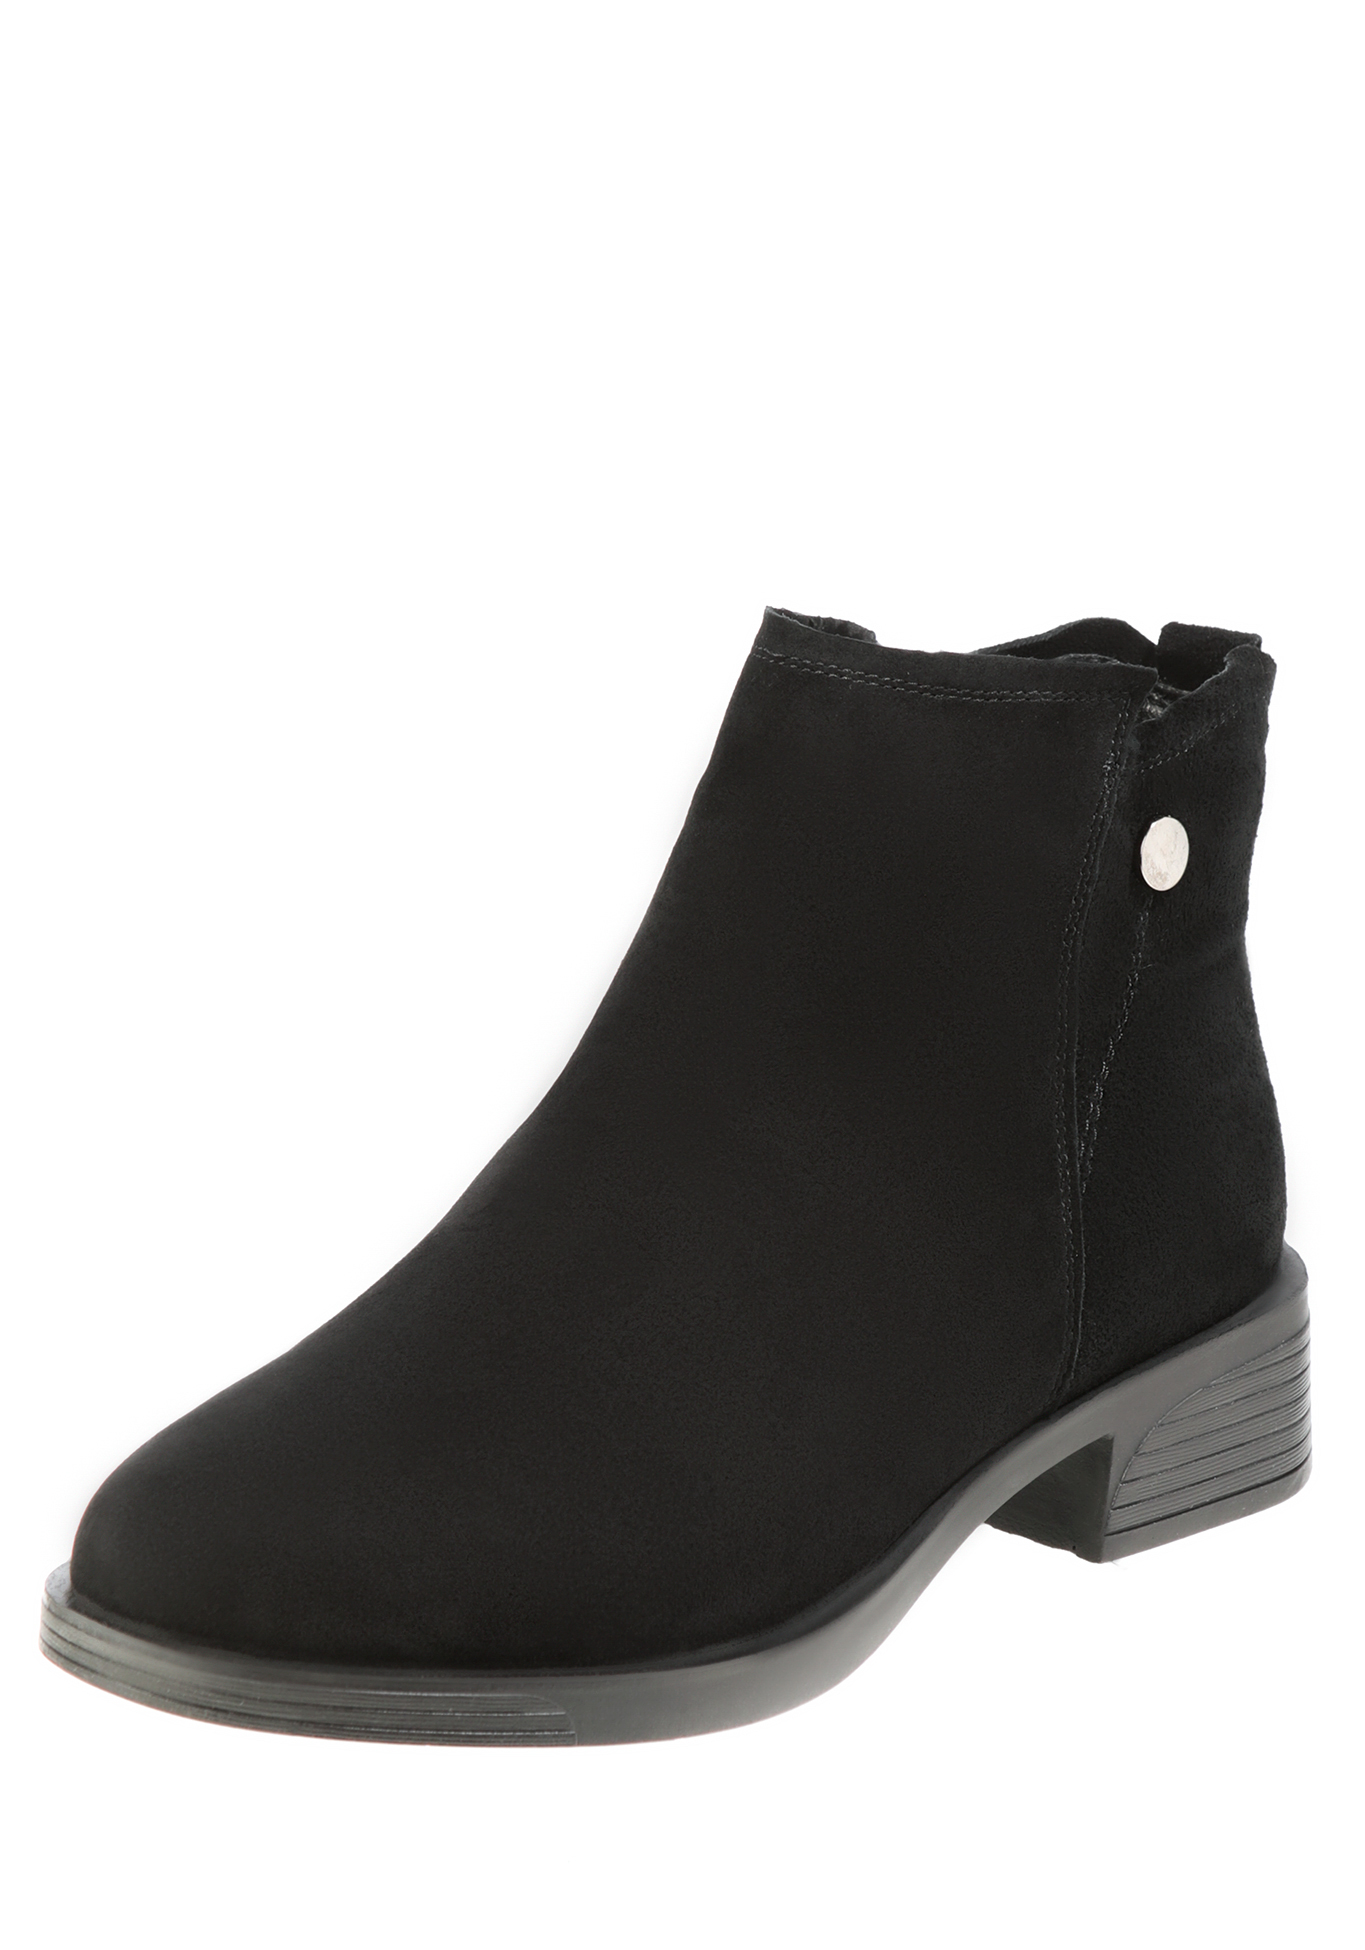 Ботинки «Юфез», женские Makfine, размер 36, цвет черный - фото 2